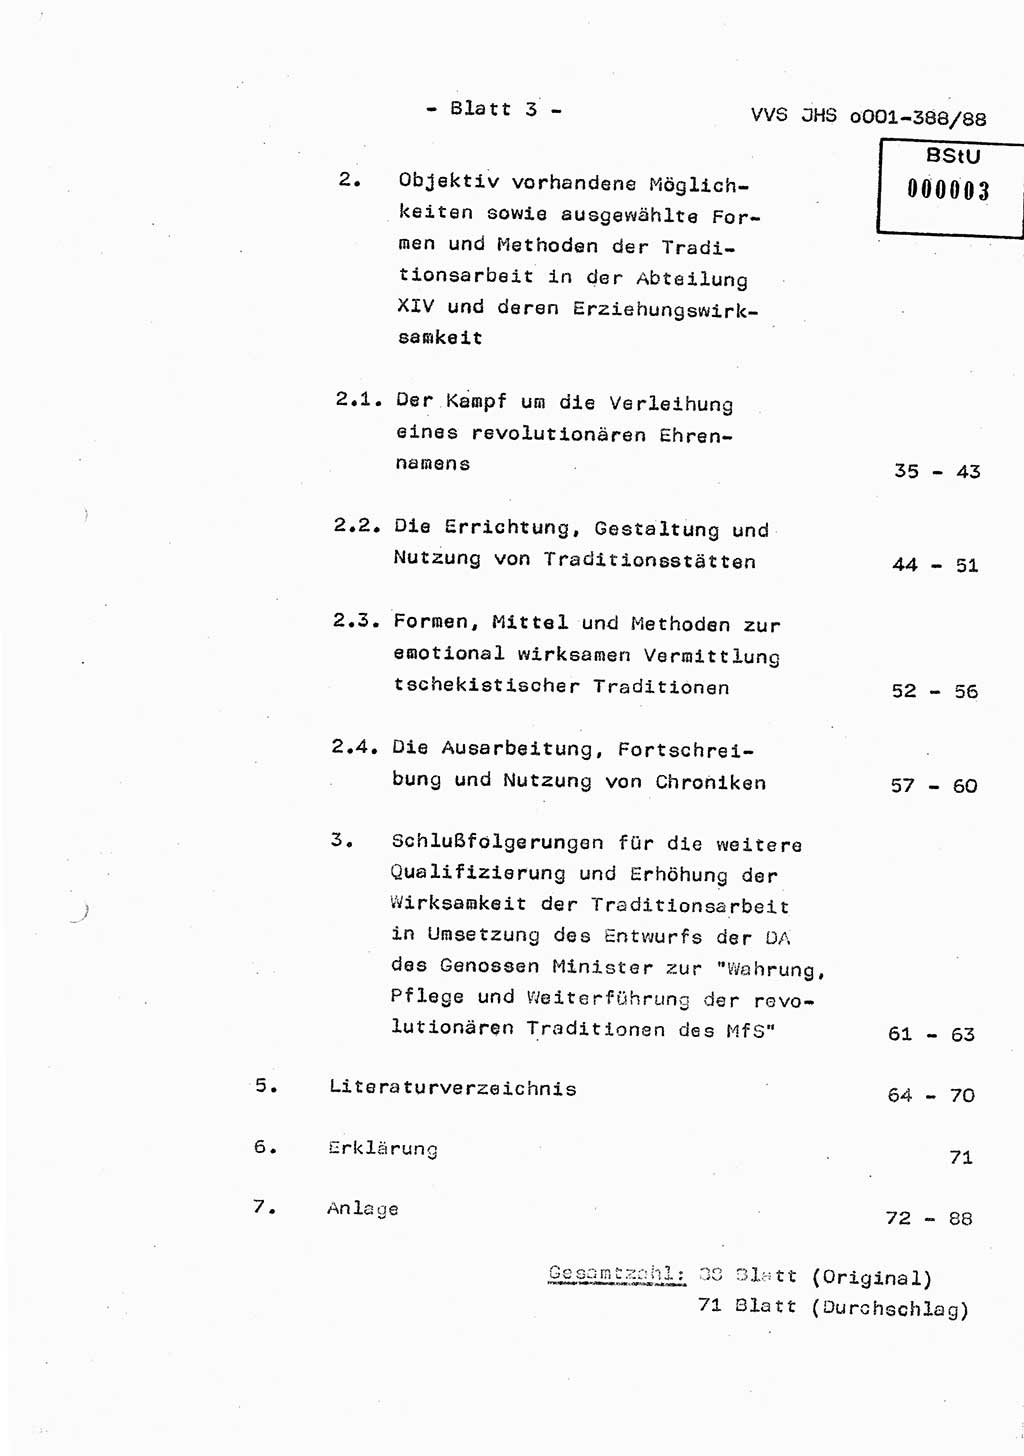 Diplomarbeit Hauptmann Heinz Brixel (Abt. ⅩⅣ), Ministerium für Staatssicherheit (MfS) [Deutsche Demokratische Republik (DDR)], Juristische Hochschule (JHS), Vertrauliche Verschlußsache (VVS) o001-388/88, Potsdam 1988, Blatt 3 (Dipl.-Arb. MfS DDR JHS VVS o001-388/88 1988, Bl. 3)